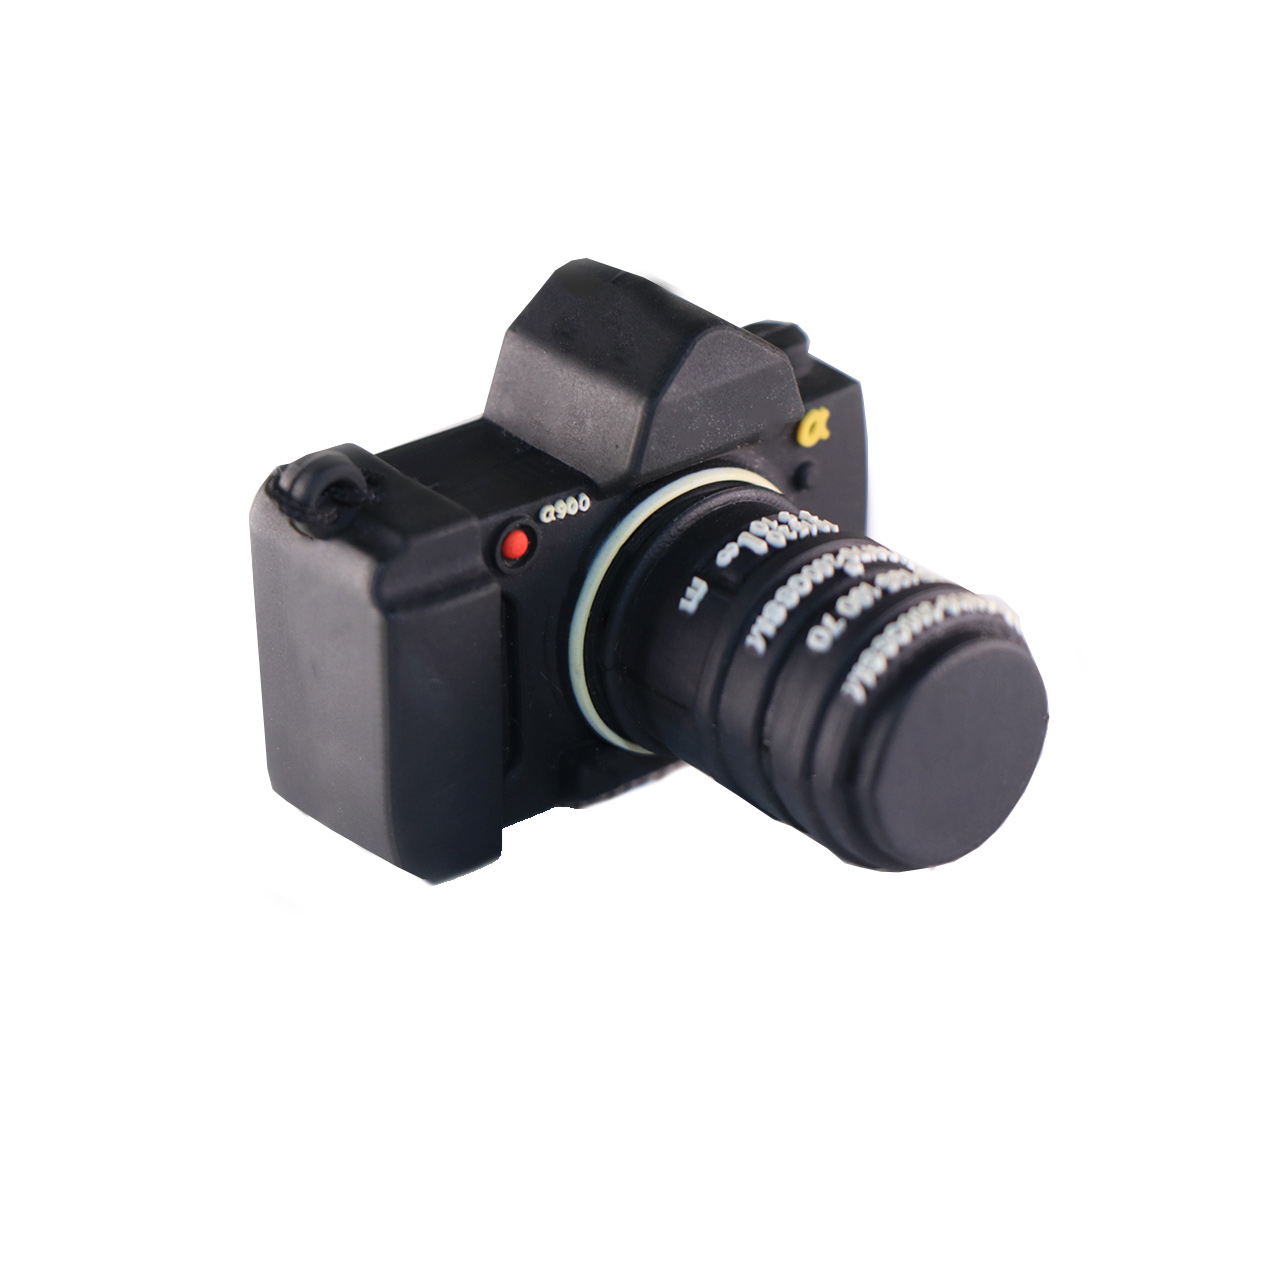 فلش مموری مدل DAYA1140-U3 طرح دوربین ظرفیت 128 گیگابایت